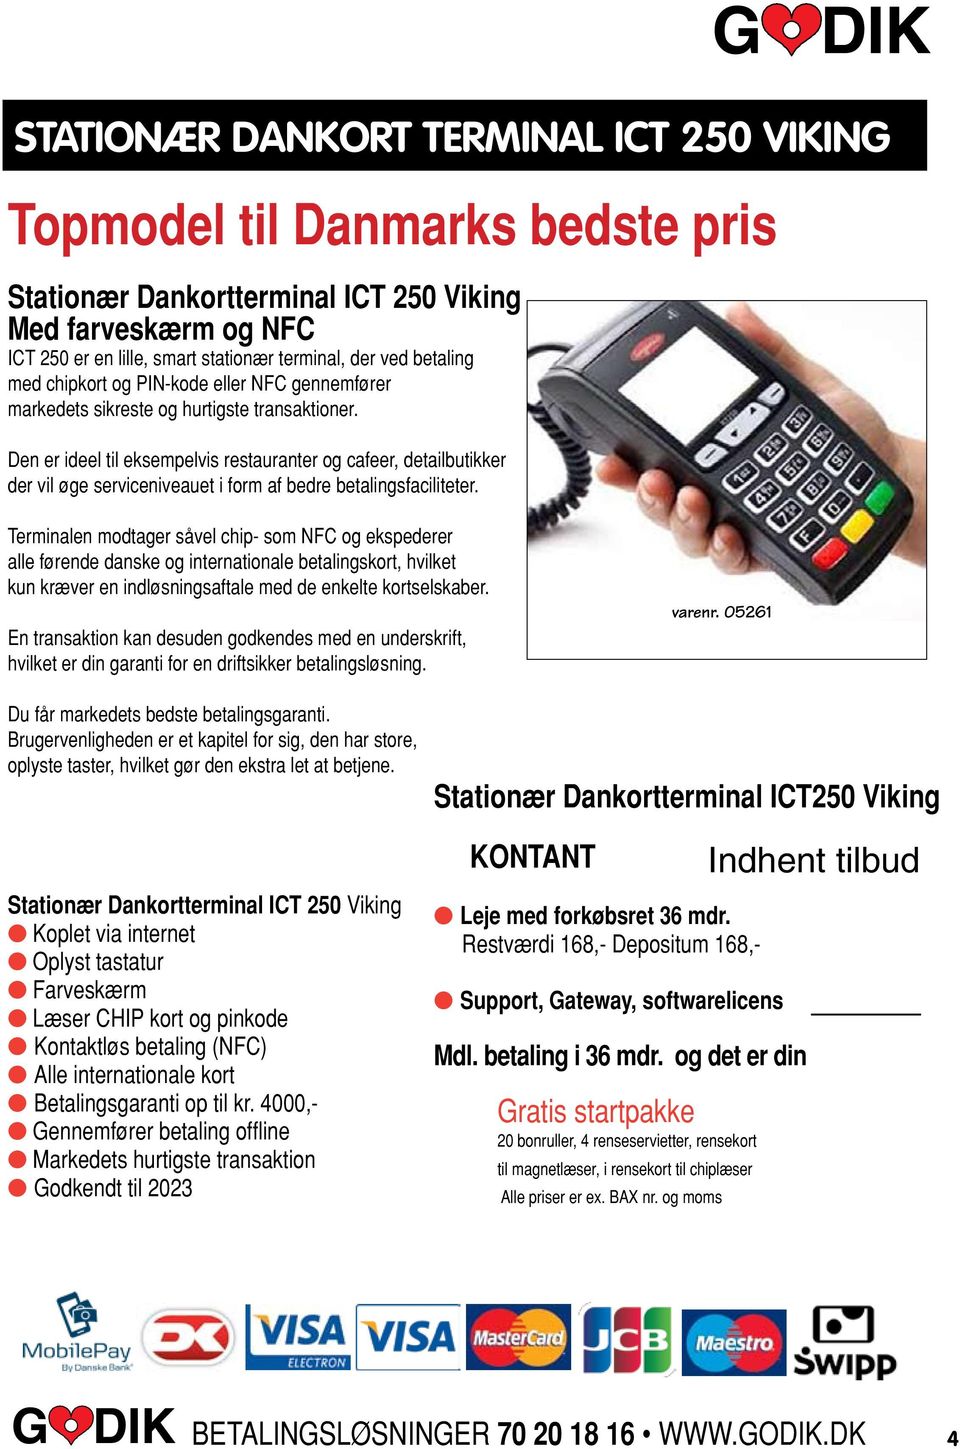 TEKNIK stationær Dankort terminal ict 250 Viking Terminalen modtager såvel chip- som NFC og ekspederer alle førende danske og internationale betalingskort, hvilket kun kræver en indløsningsaftale med